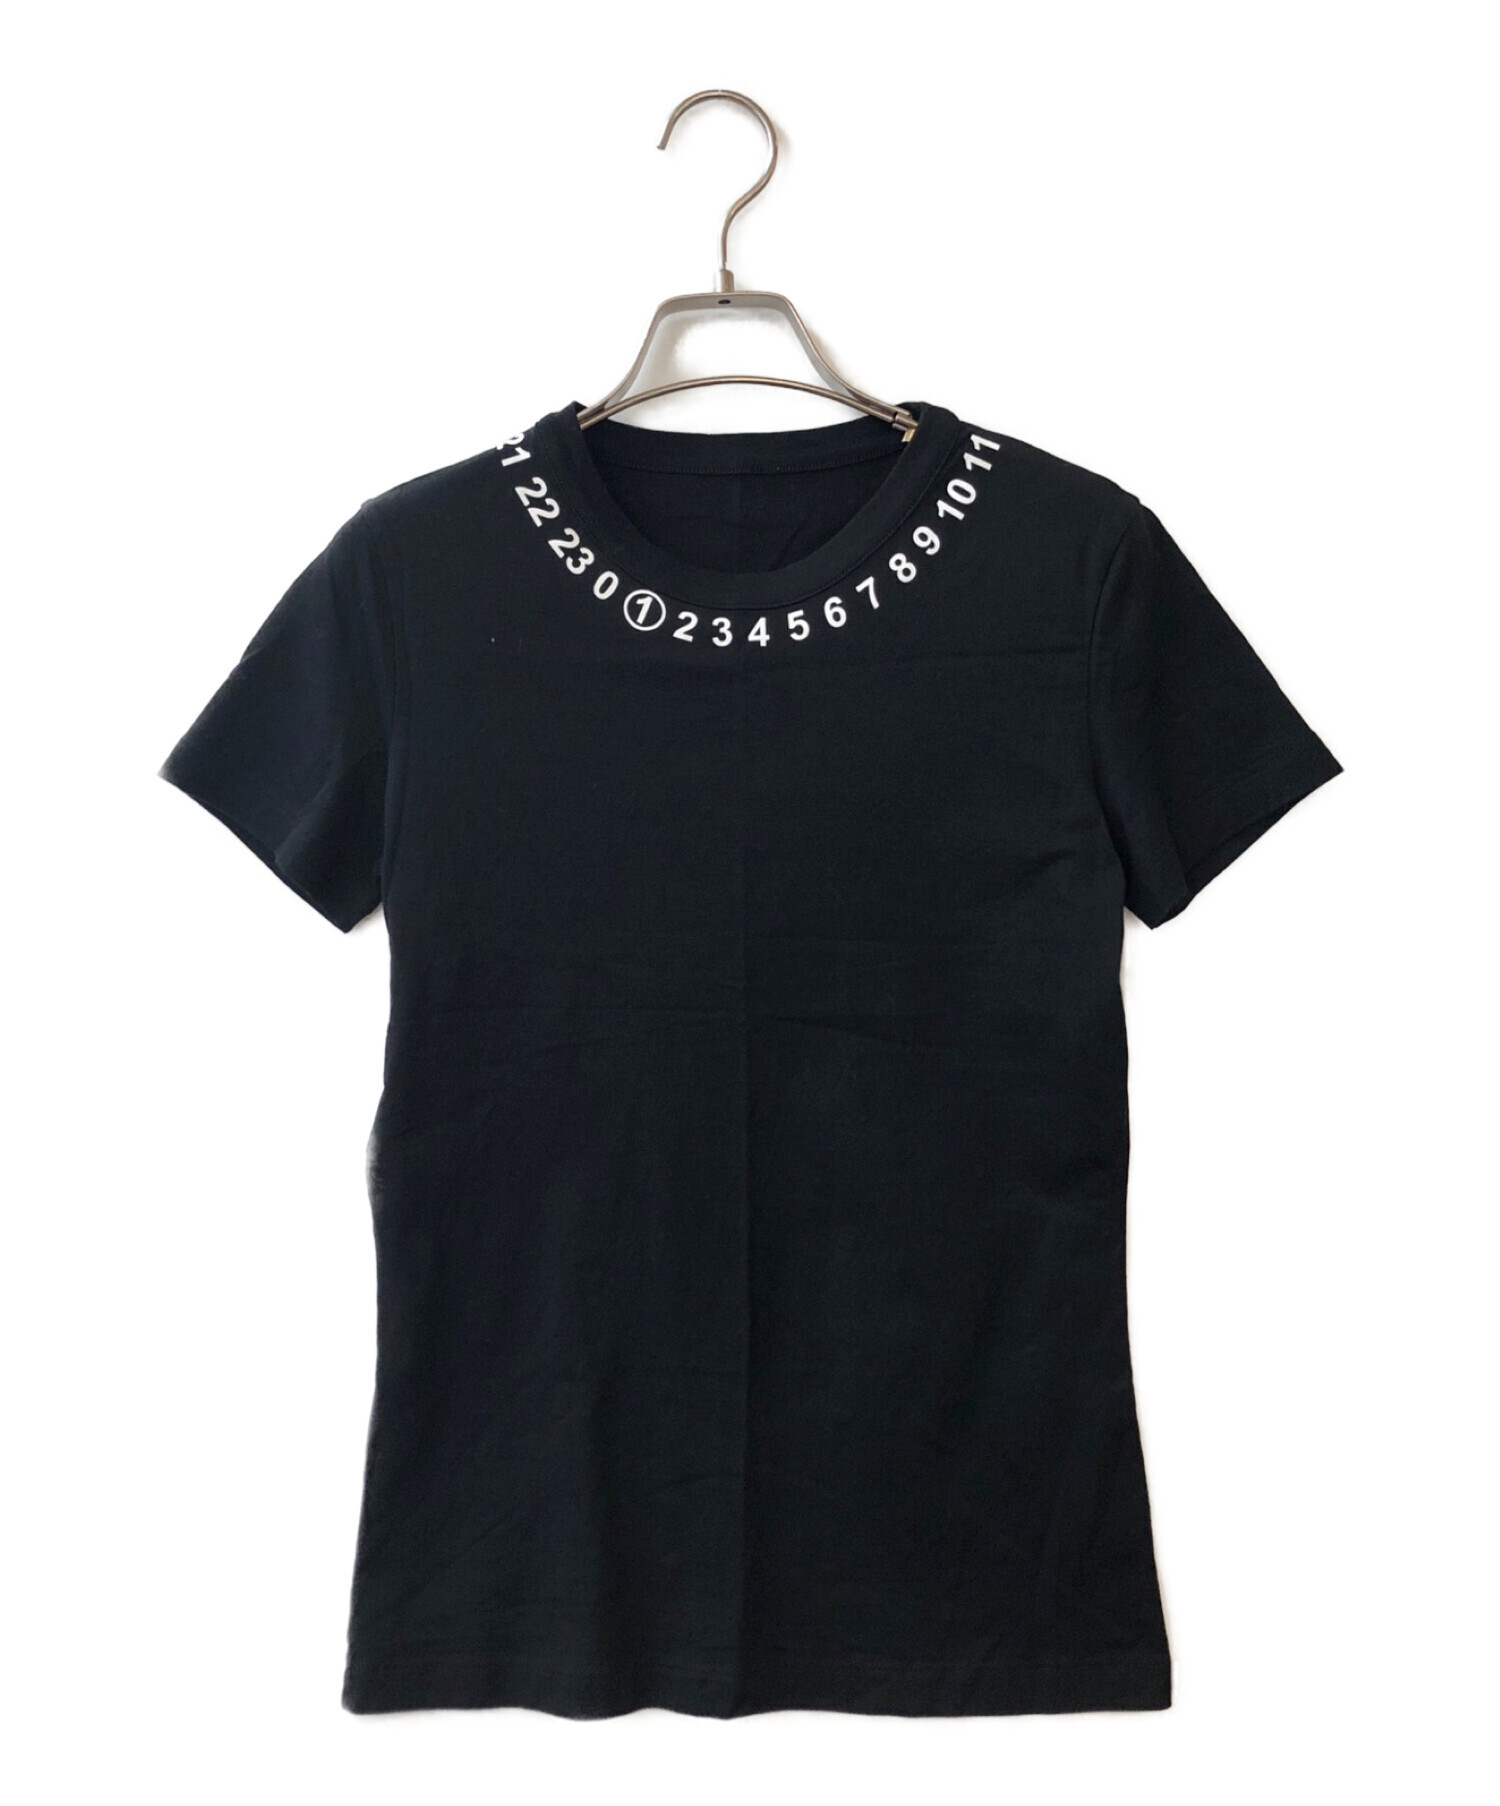 Maison Margiela (メゾンマルジェラ) ネックナンバリングTシャツ ブラック サイズ:S